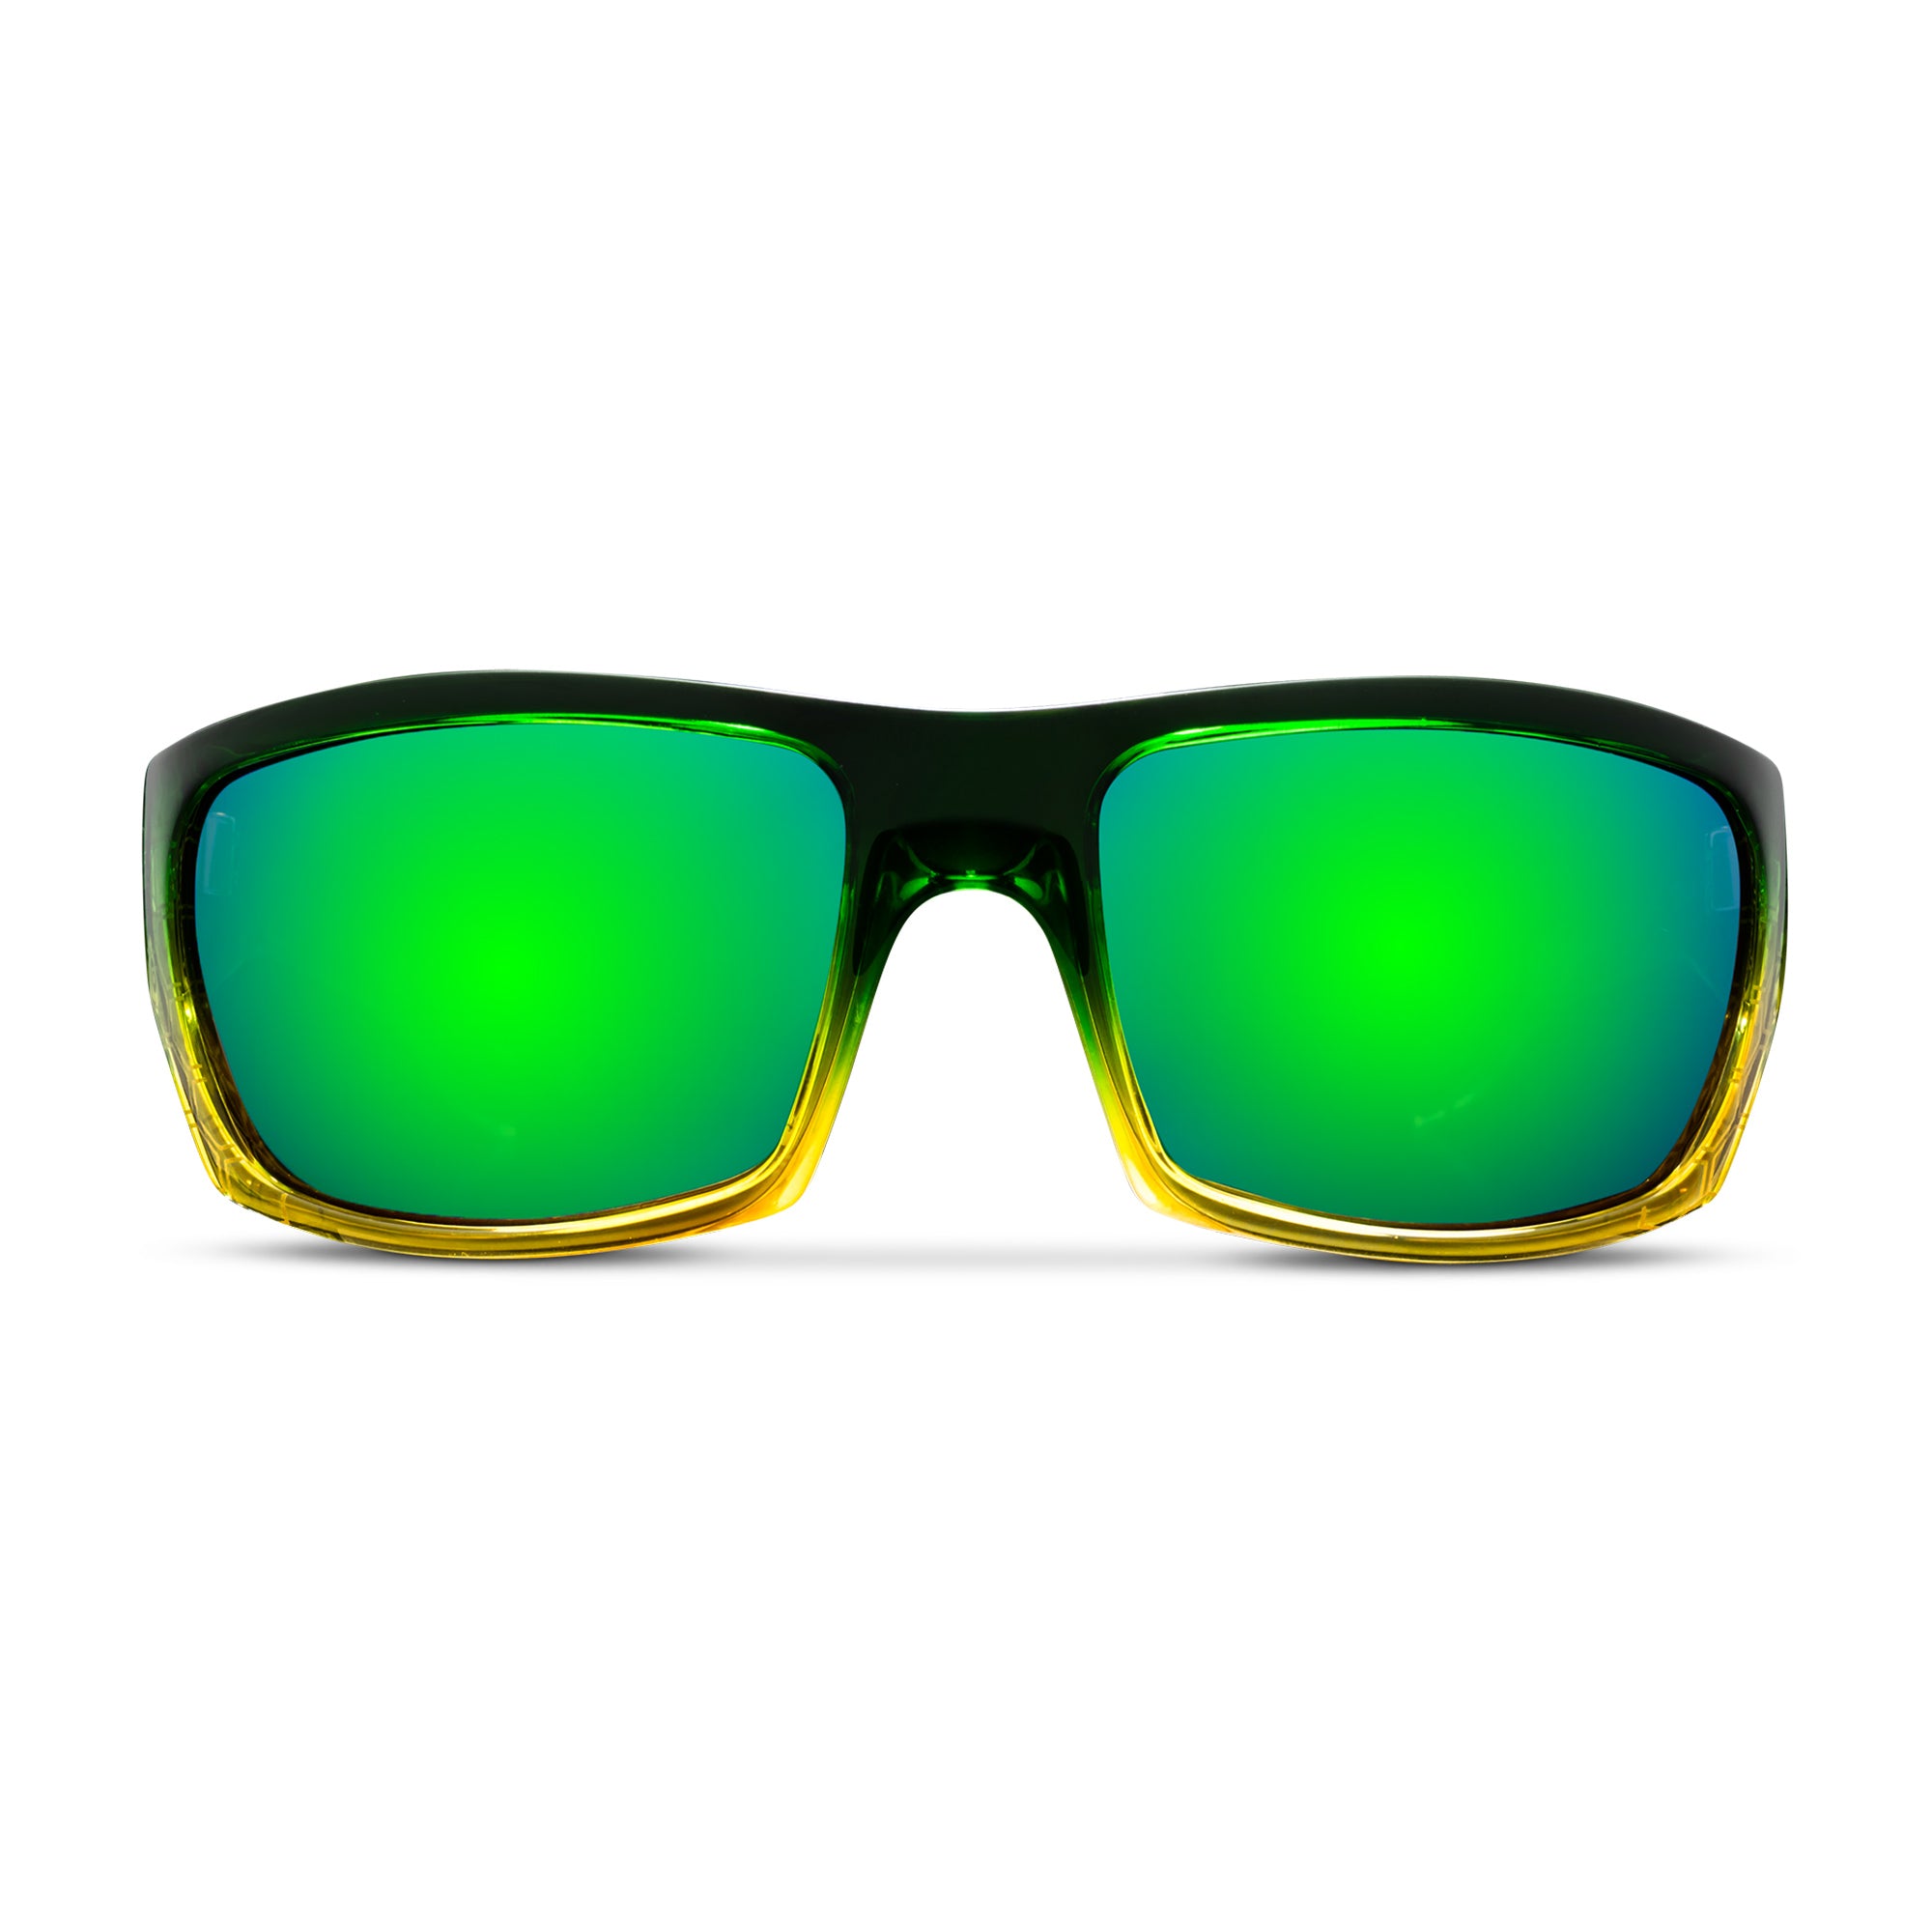 Rincon Polarized Sunglasses in Green Mirror | Costa Del Mar®